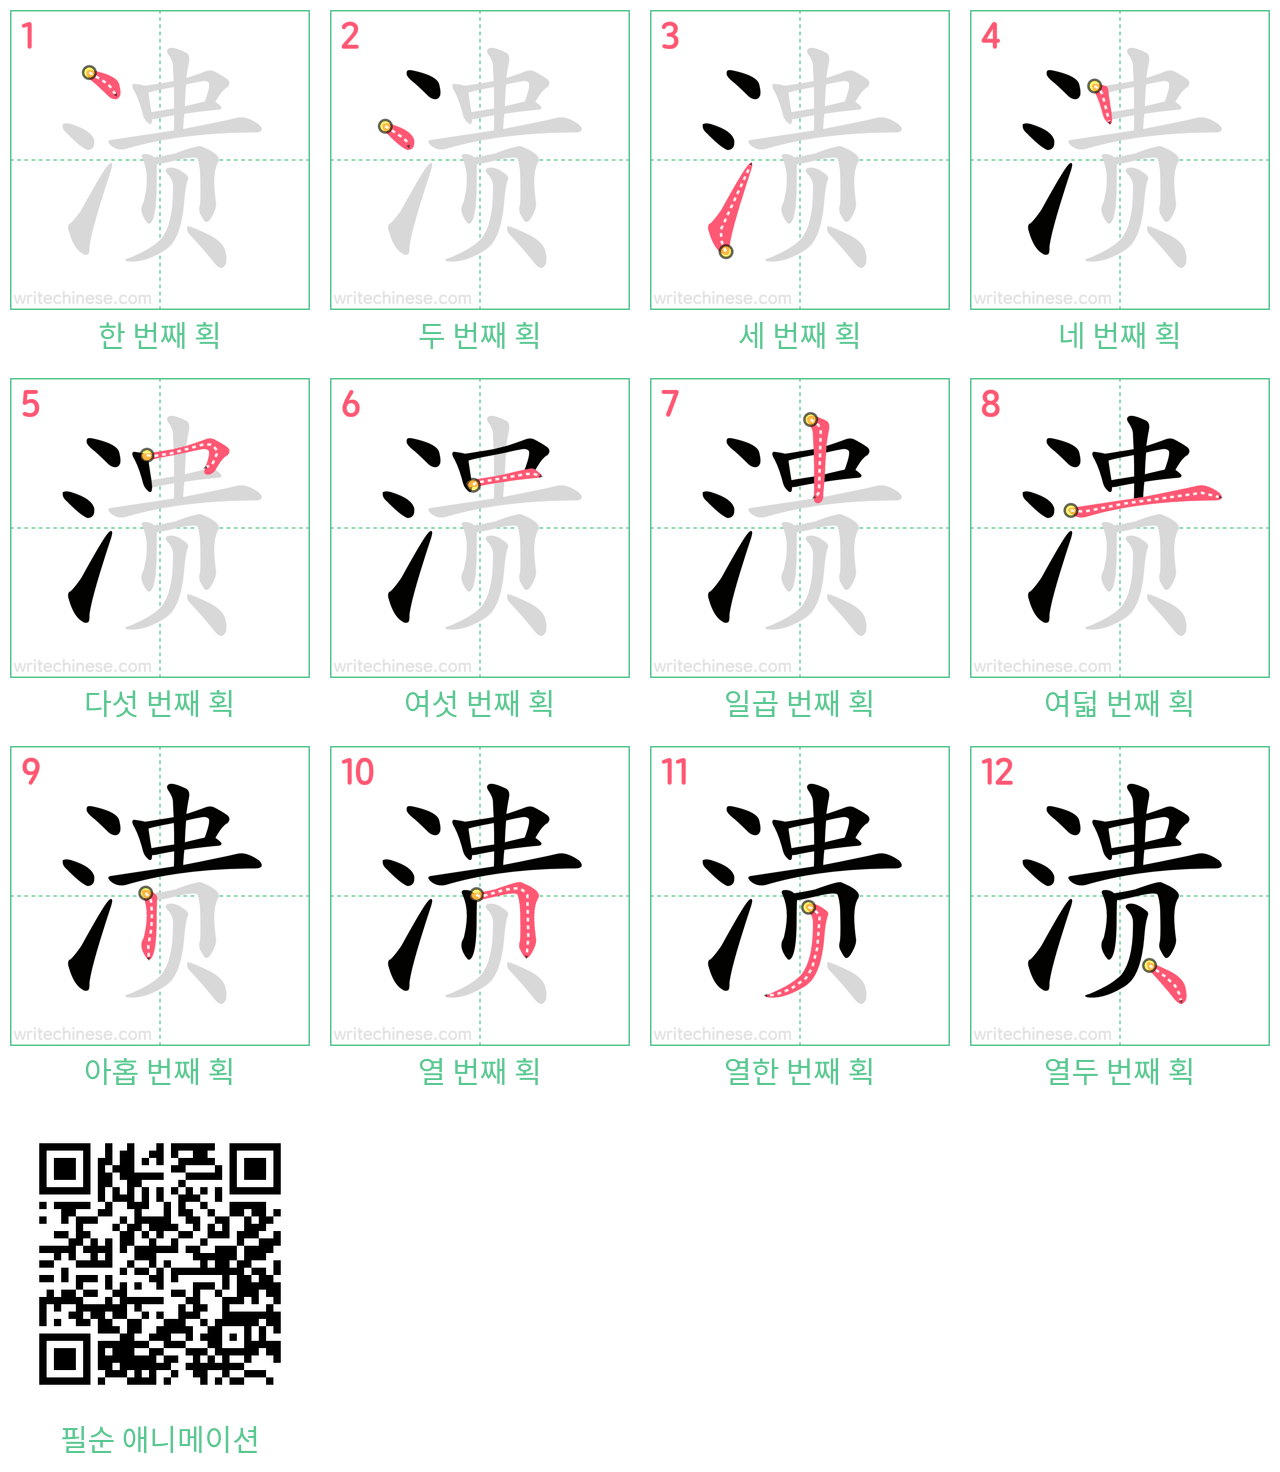 溃 step-by-step stroke order diagrams